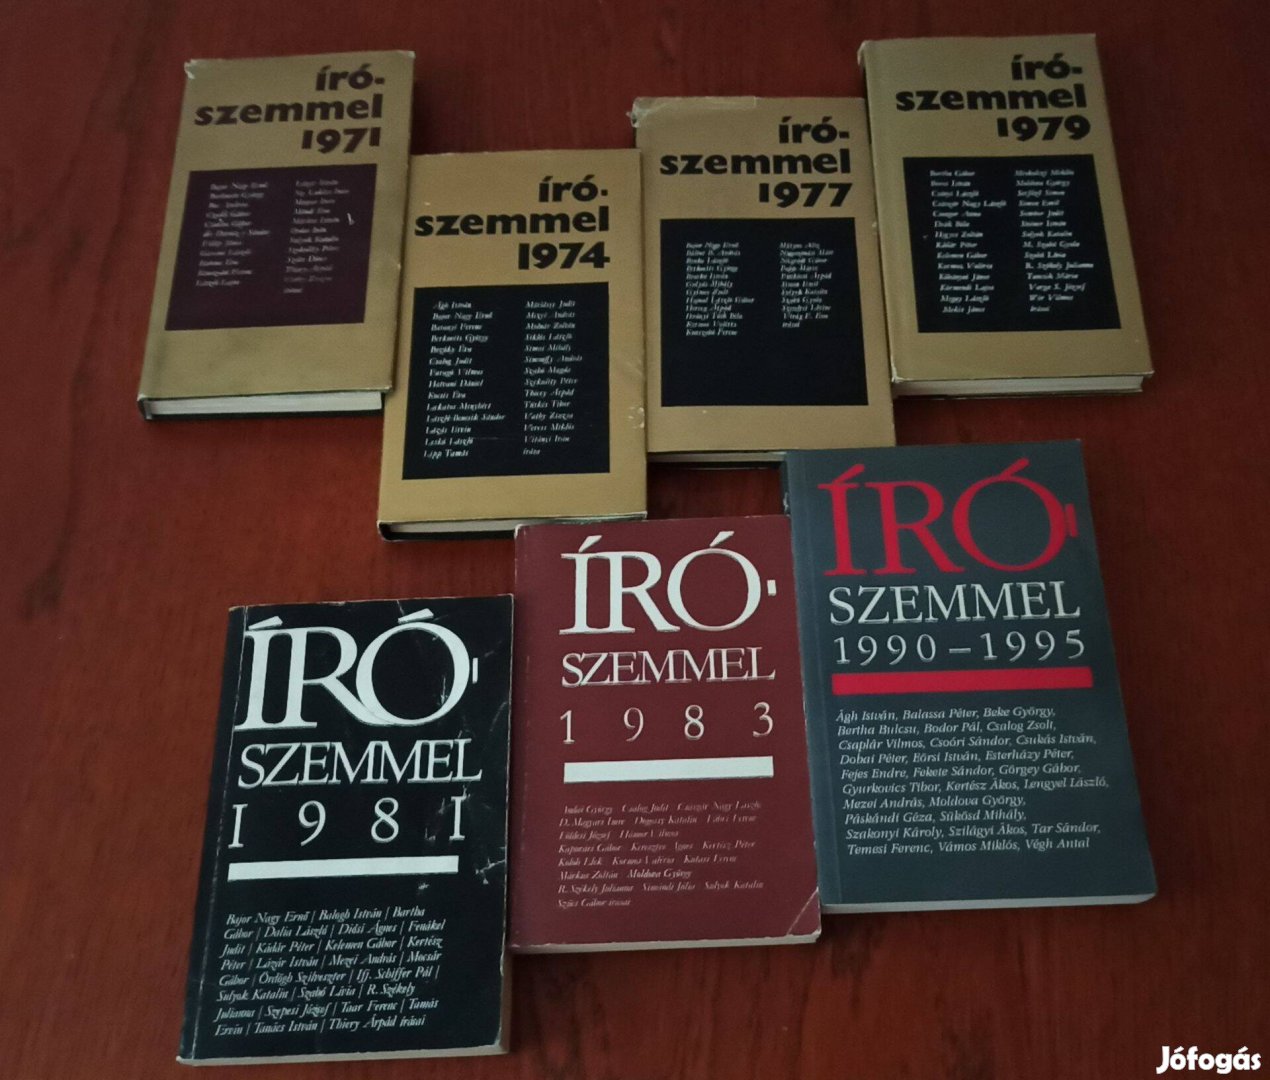 Írószemmel / Antológiák / 1971, 1974, 1977, 1979, 1981, 1983, 1990-95